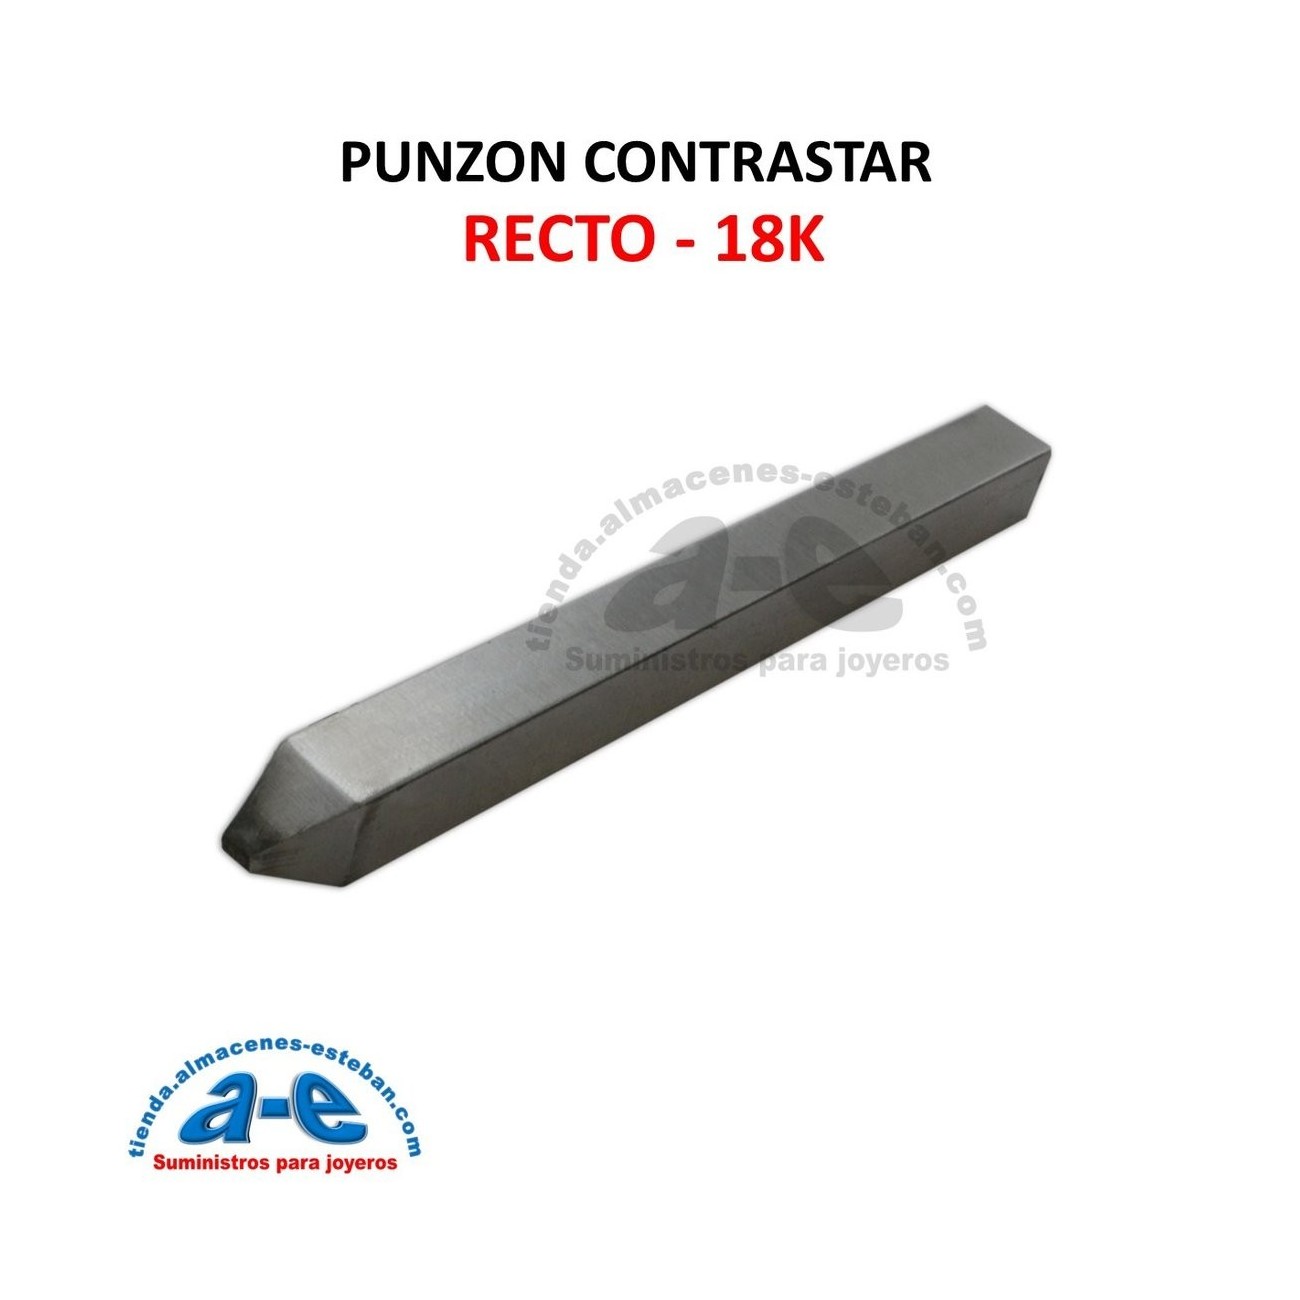 PUNZON CONTRASTE RECTO 18K